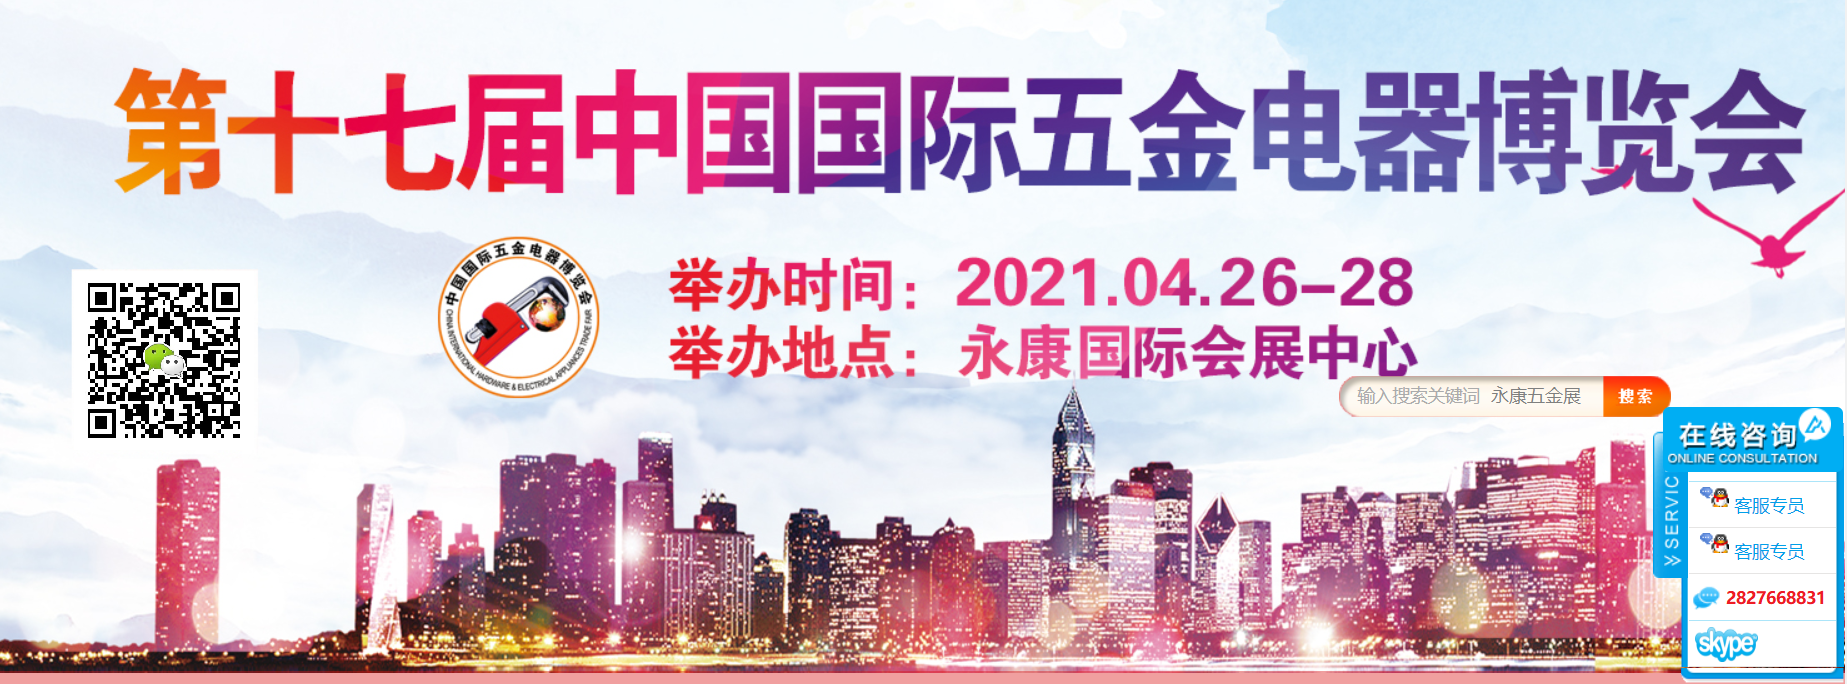 2021永康五金展(春季)暨第17届中国国际五金电器博览会